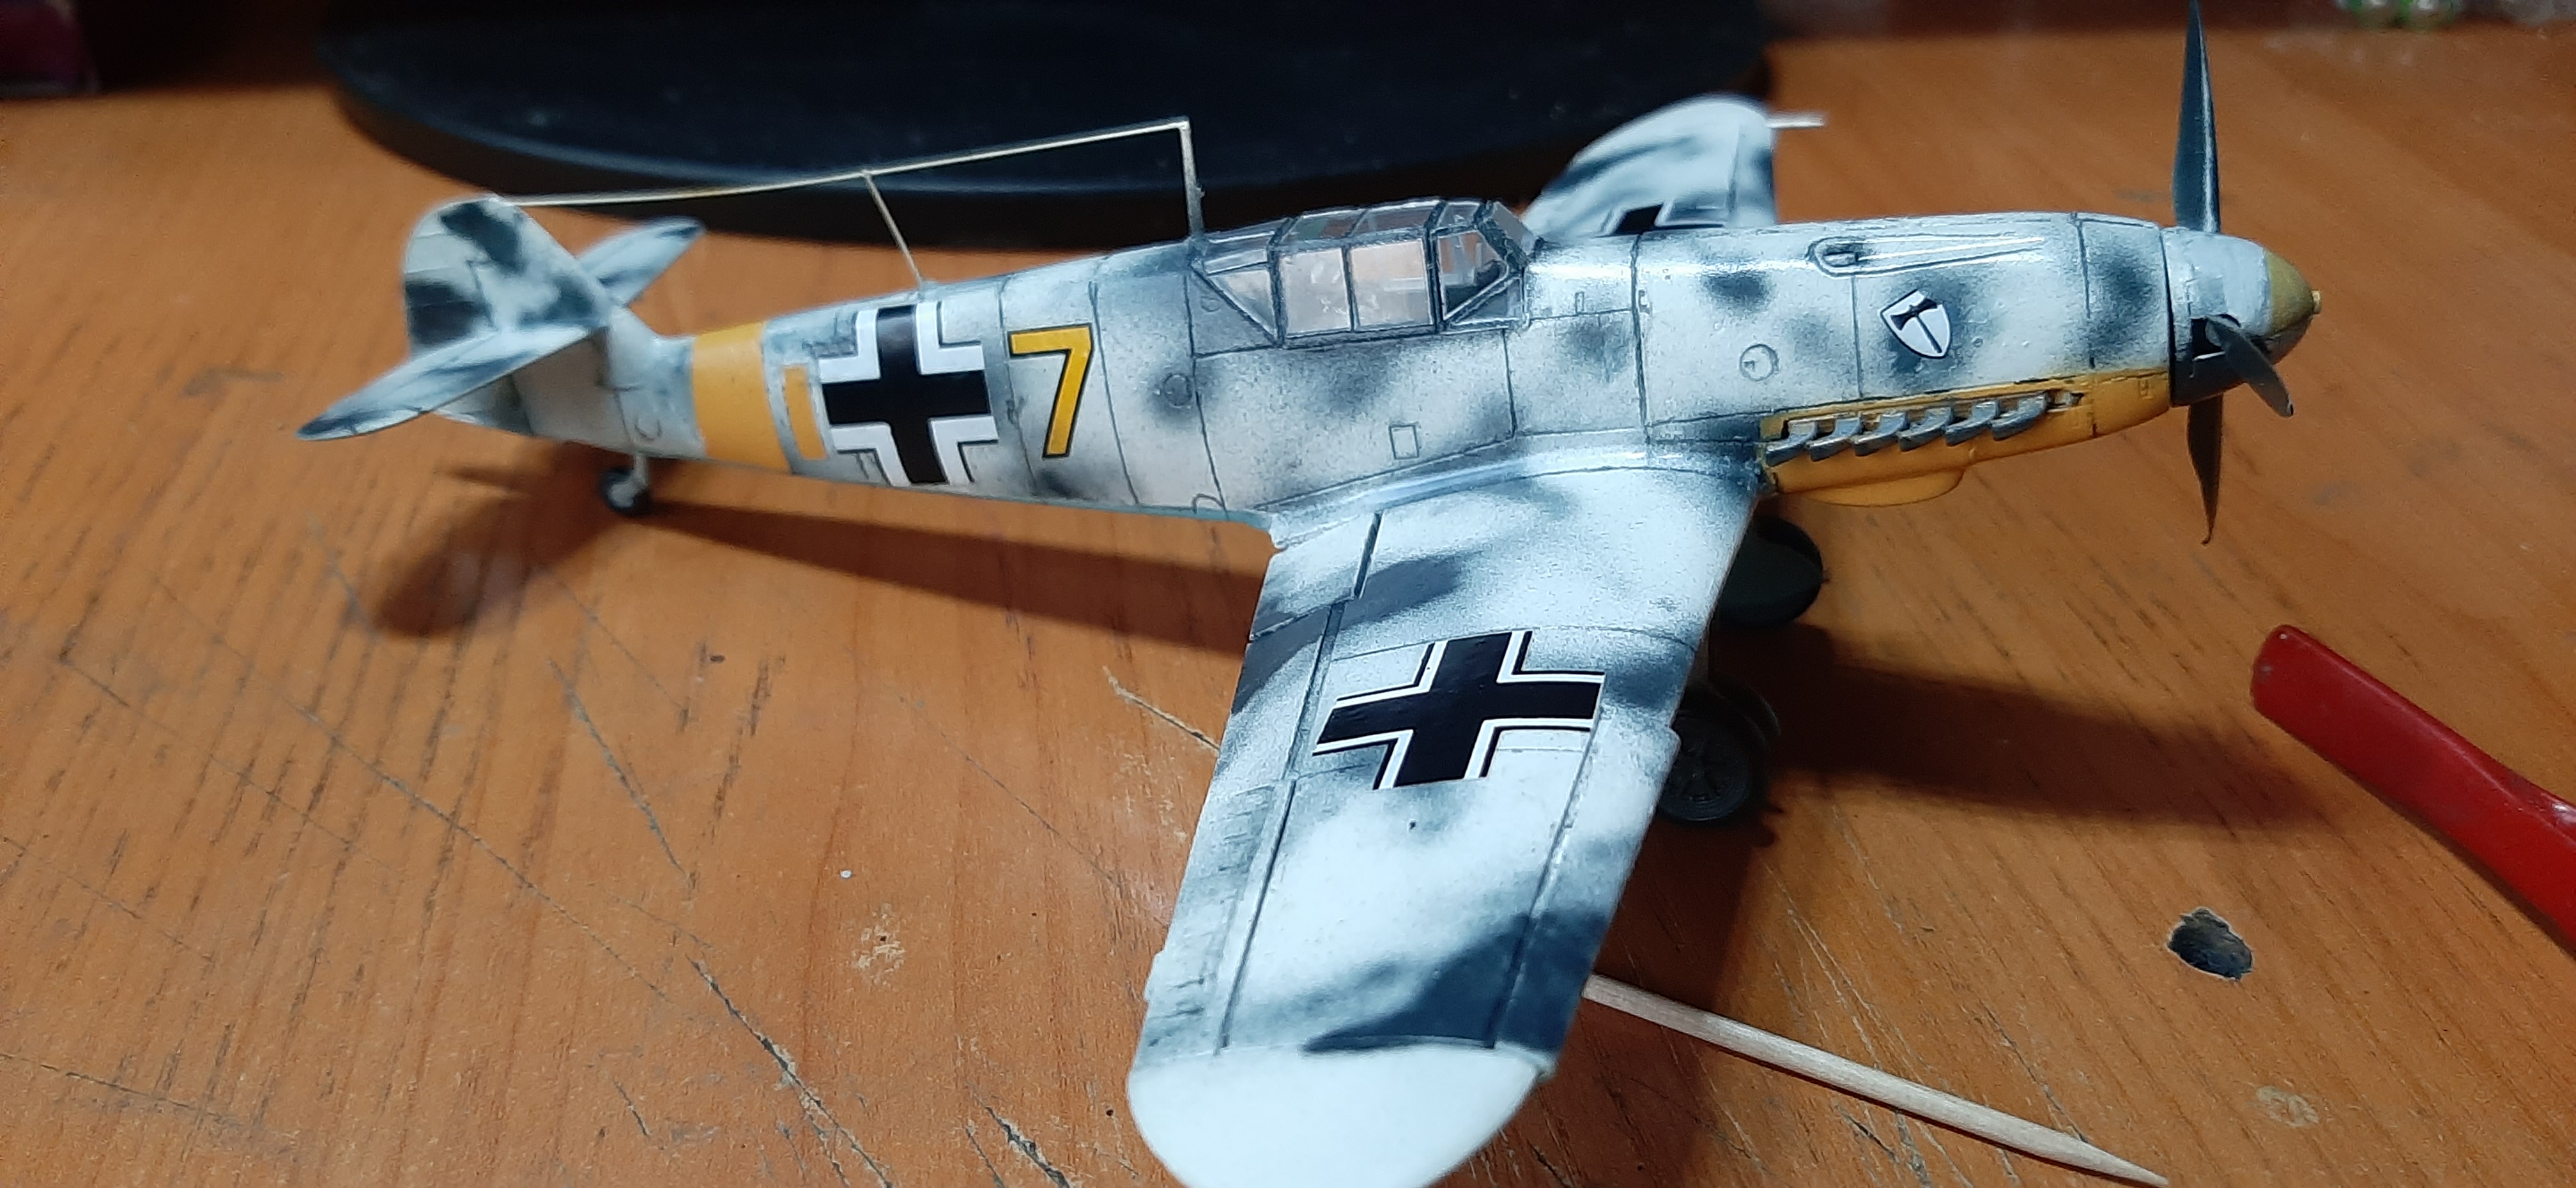 Фото Самолет Bf 109F-4 с персоналом ВВС Германии